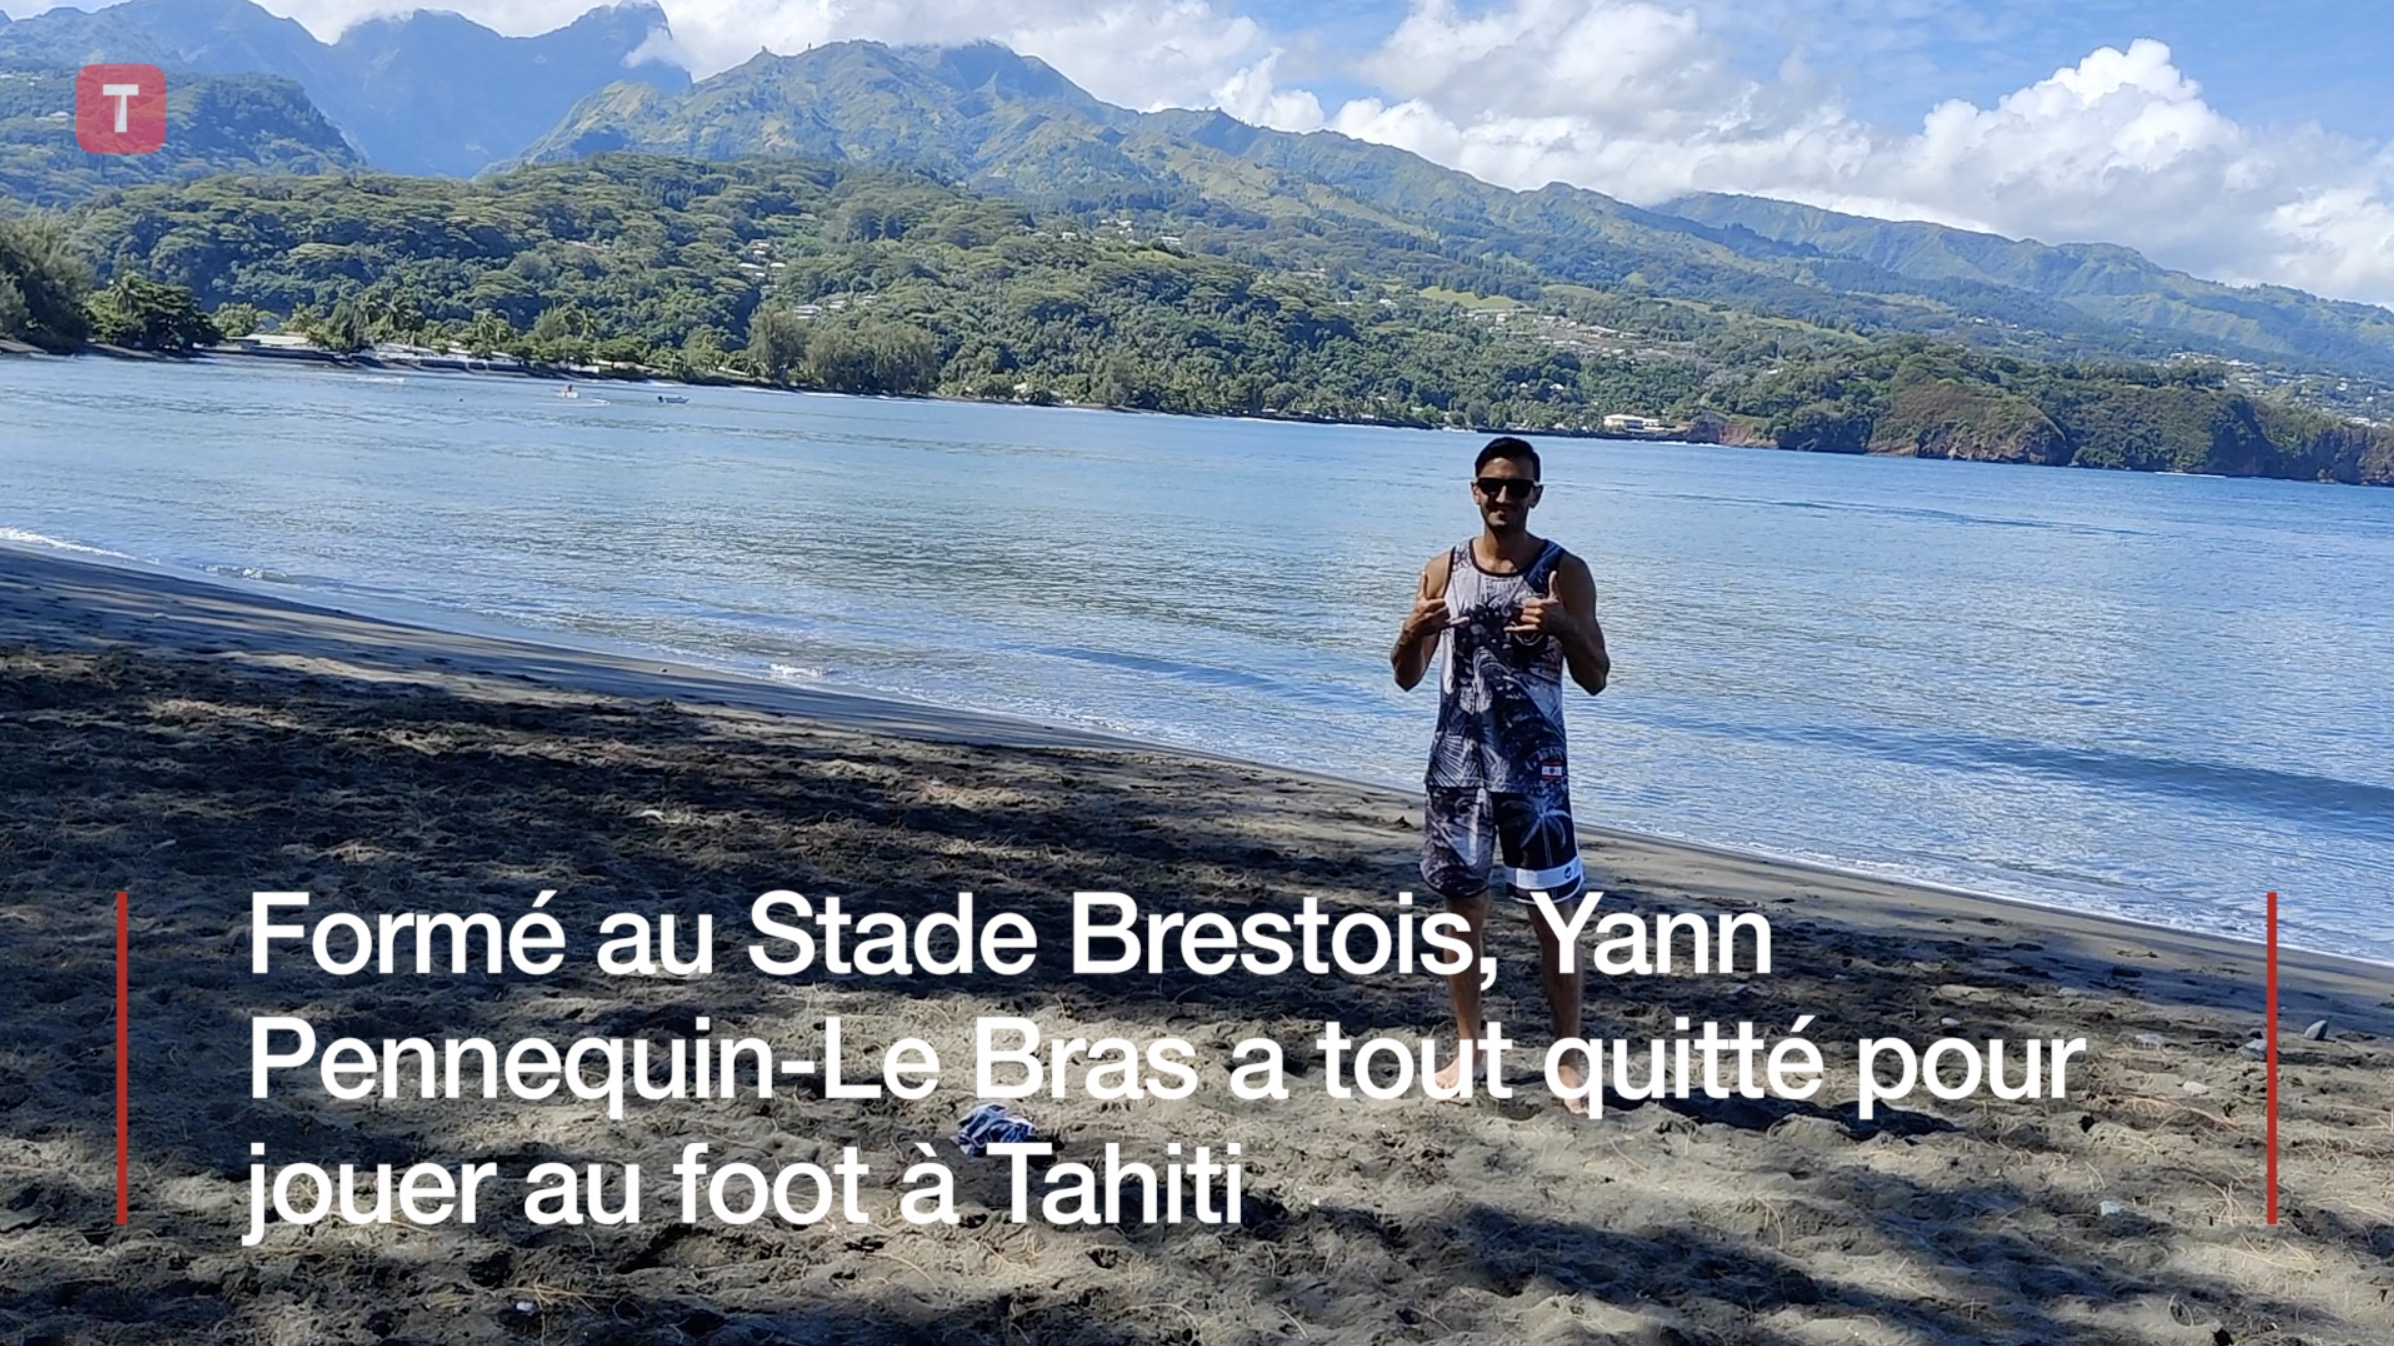 Formé au Stade Brestois, Yann Pennequin-Le Bras a tout quitté pour jouer au foot à Tahiti (Le Télégramme)